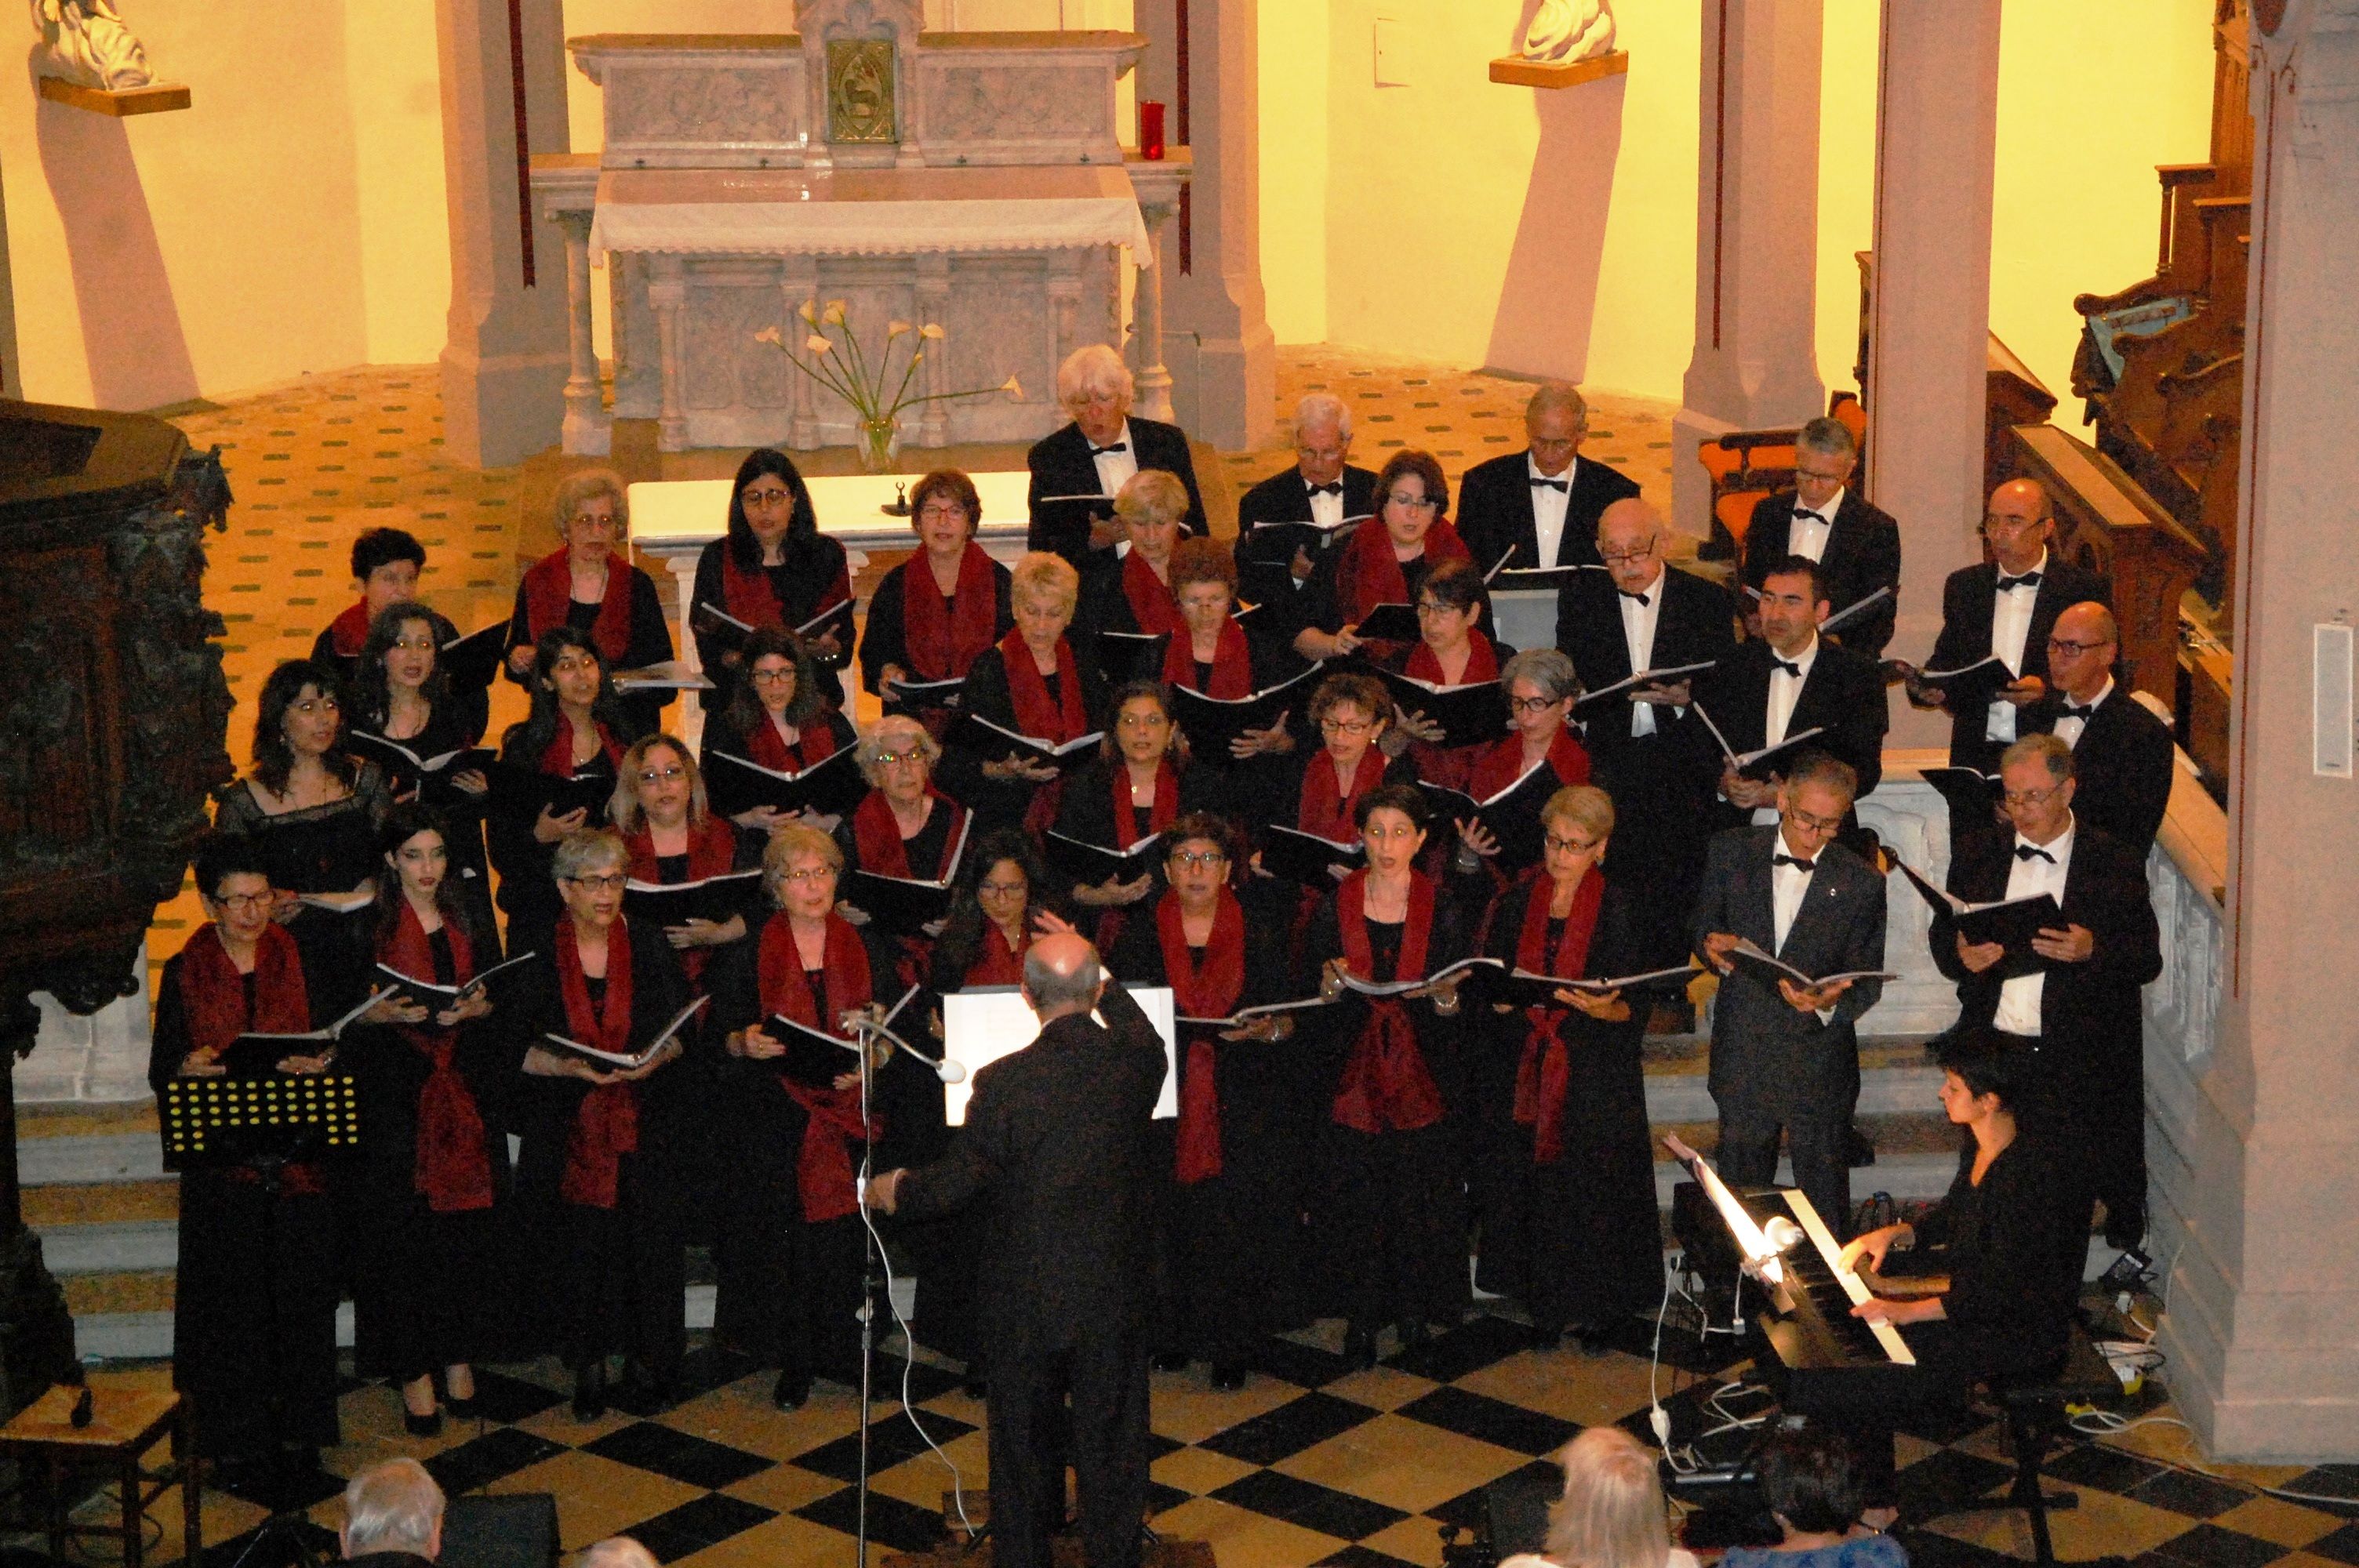 Concert en la chapelle Notre Dame de Pipet à Vienne le 3 juin 2018 organisé par la Maison de la Culture Arménienne de Vienne